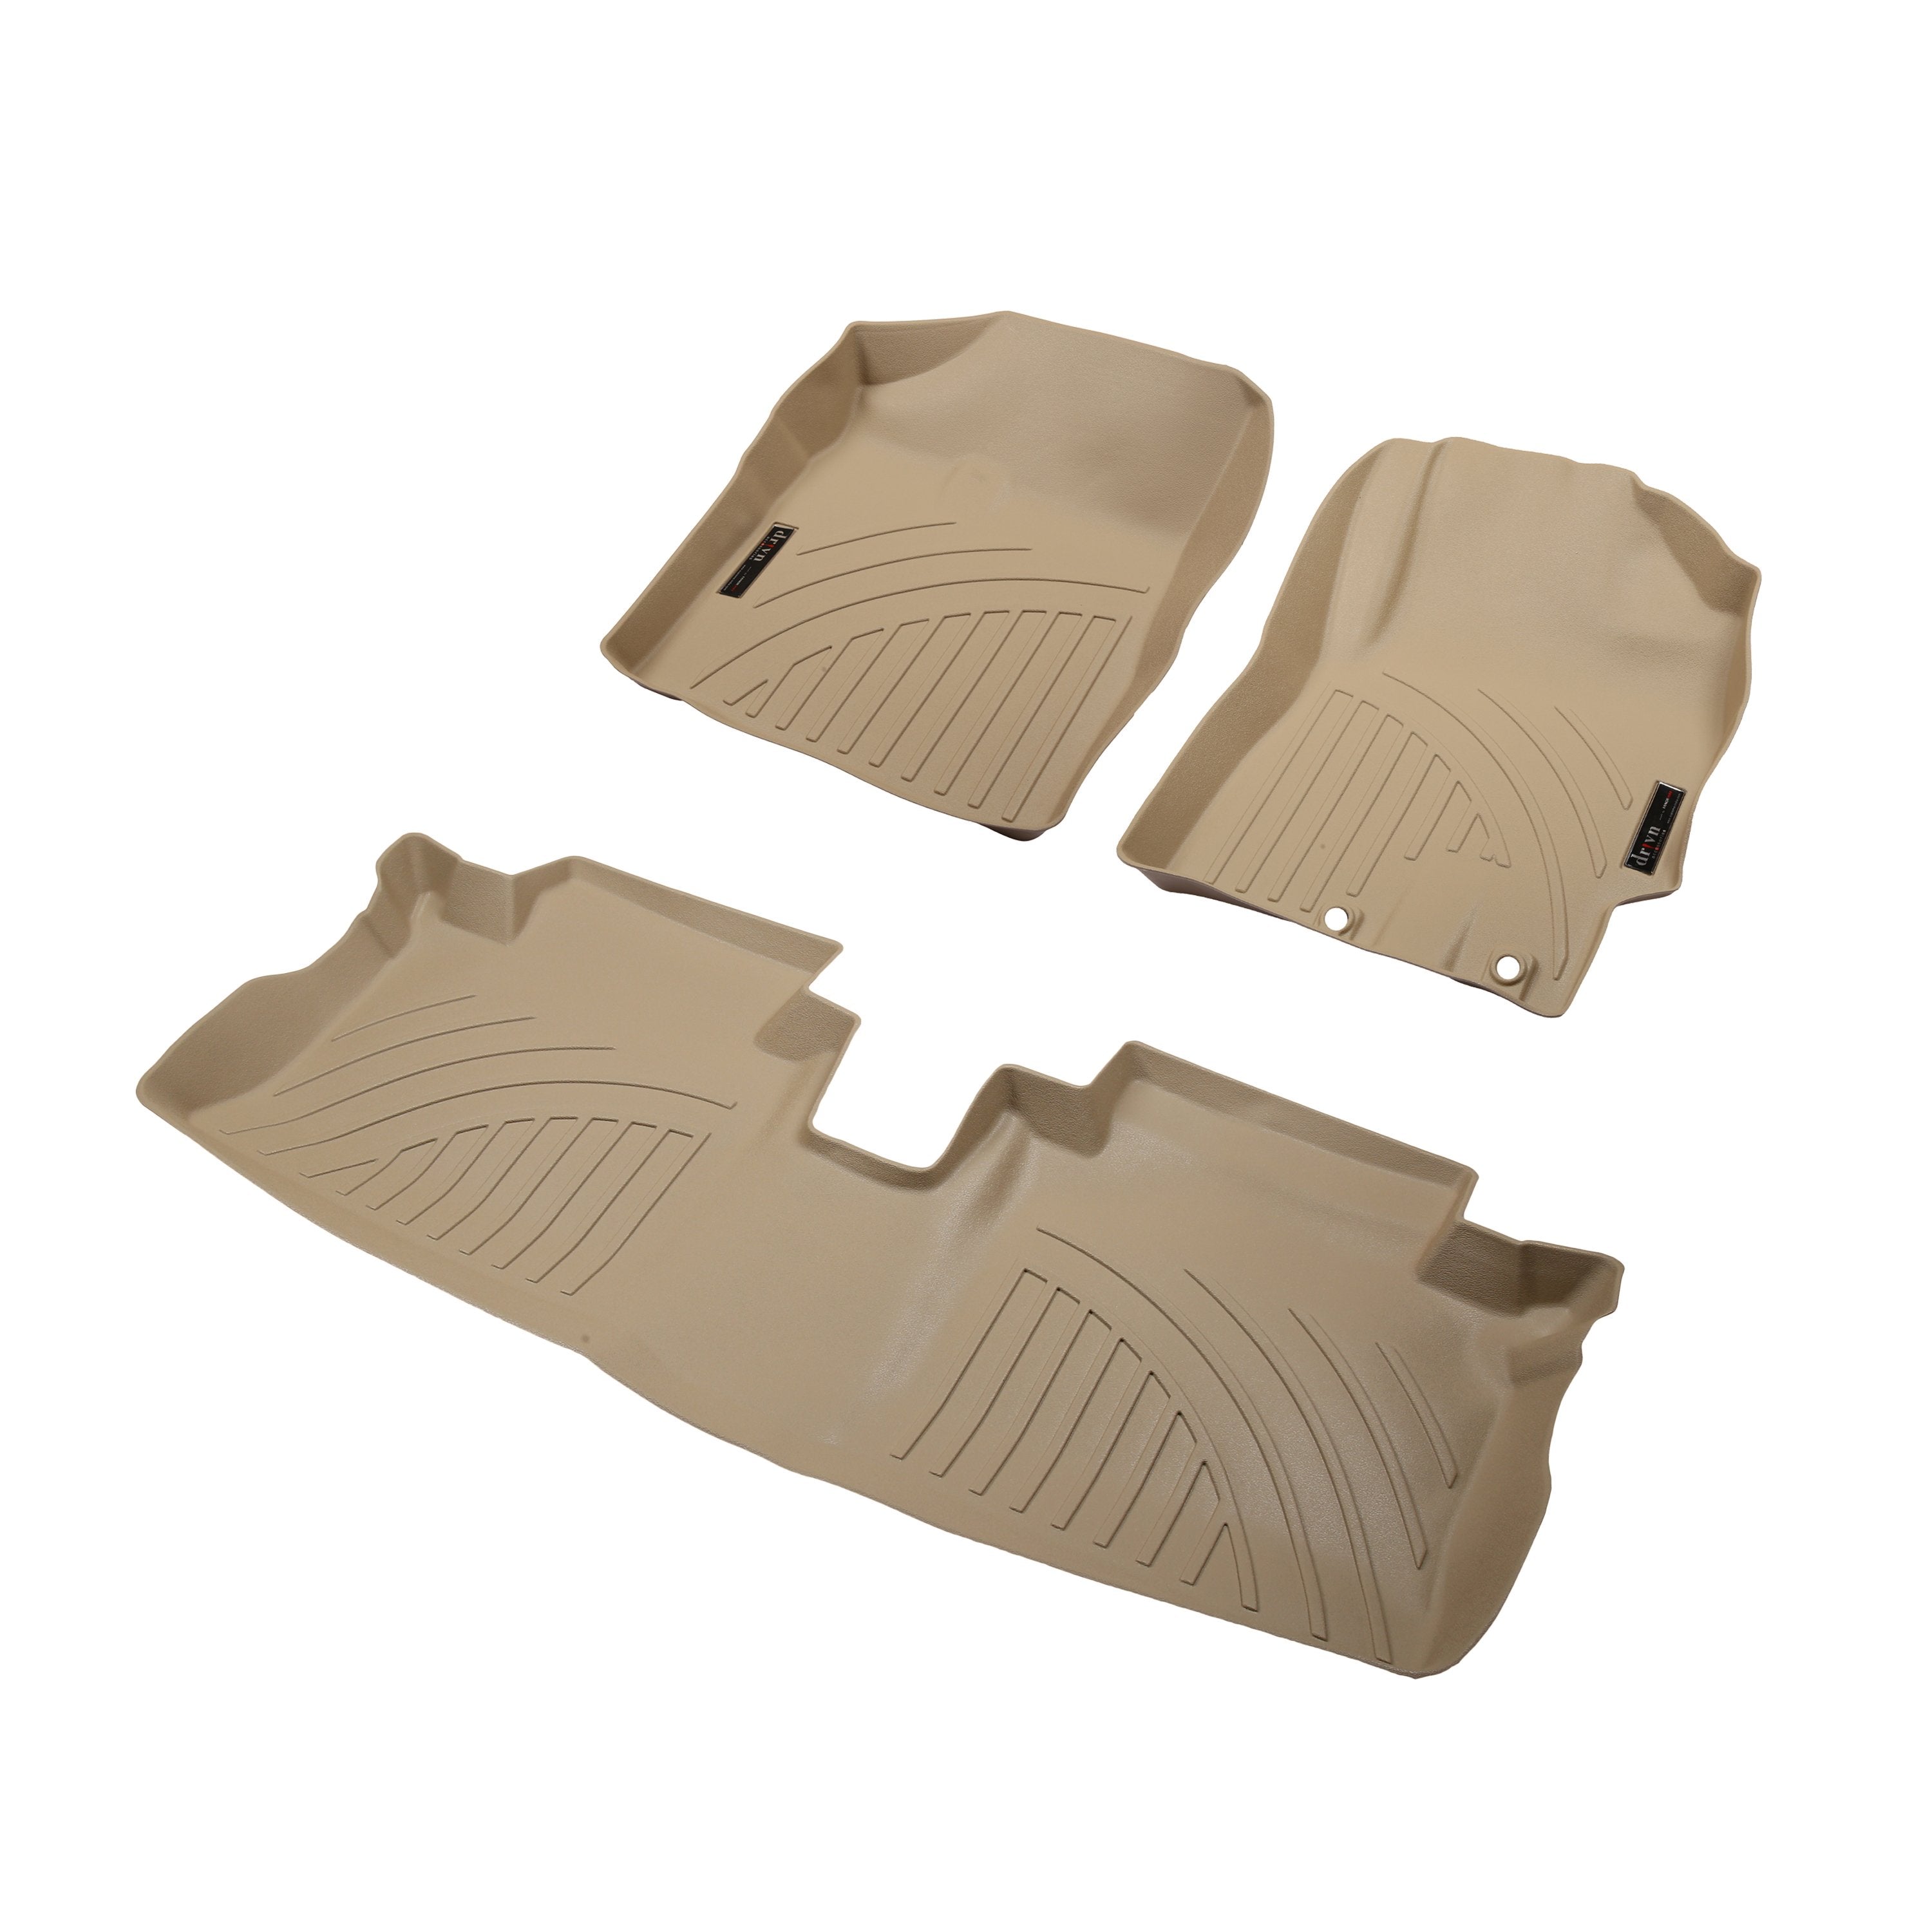 Drivn 5D TPV Car Foot Mat for Toyota Yaris - Beige, 5D Car Floor Mat, Customised Car Floor Mat for Toyota Yaris (Set of 3) - CARMATE®